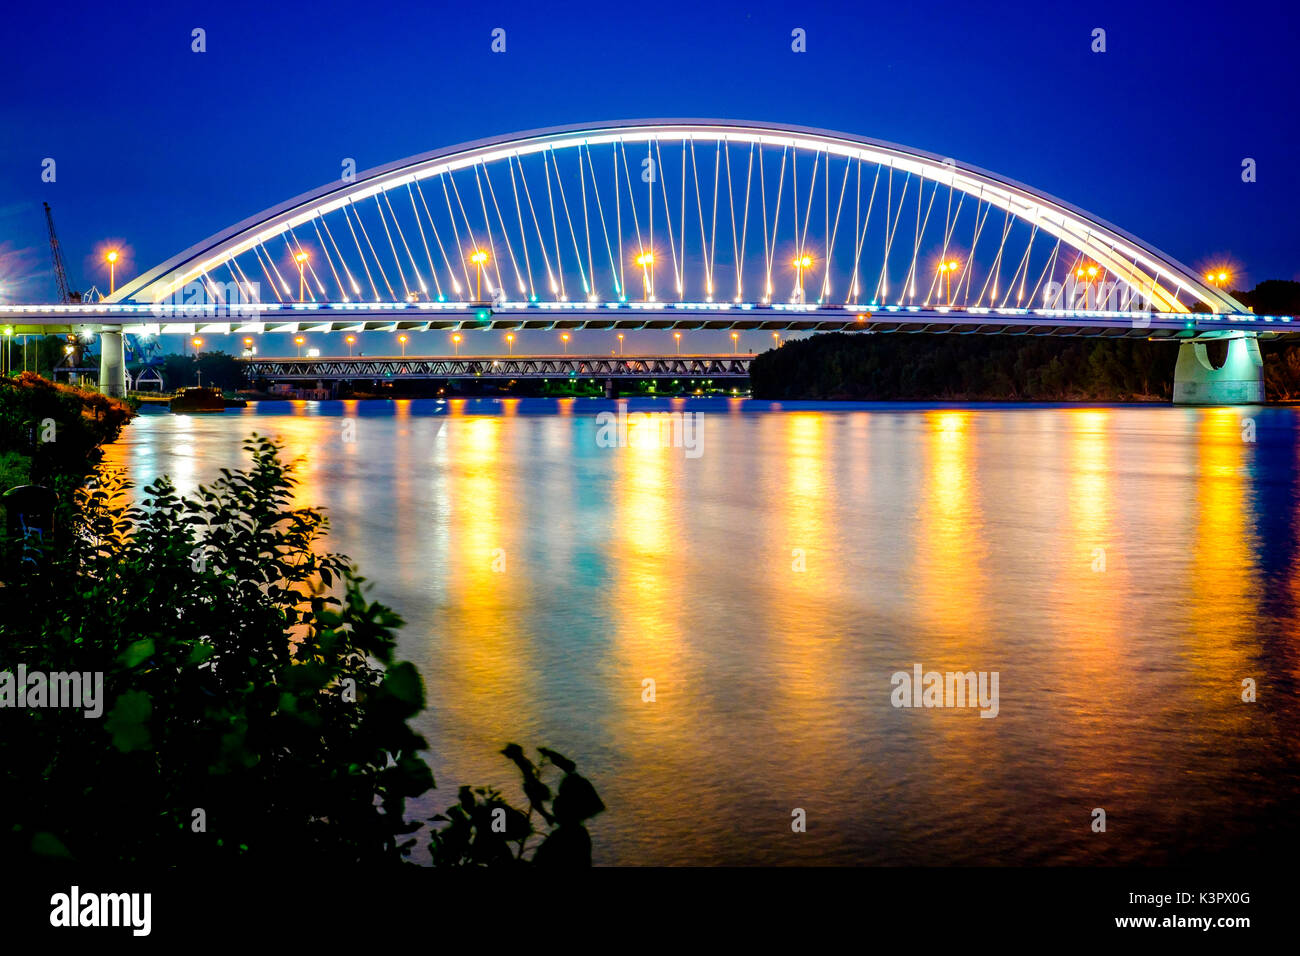 Bratislava, Slovakia, center Europe. The Apollo Bridge in Bratislava is a road bridge over the Danube. Stock Photo